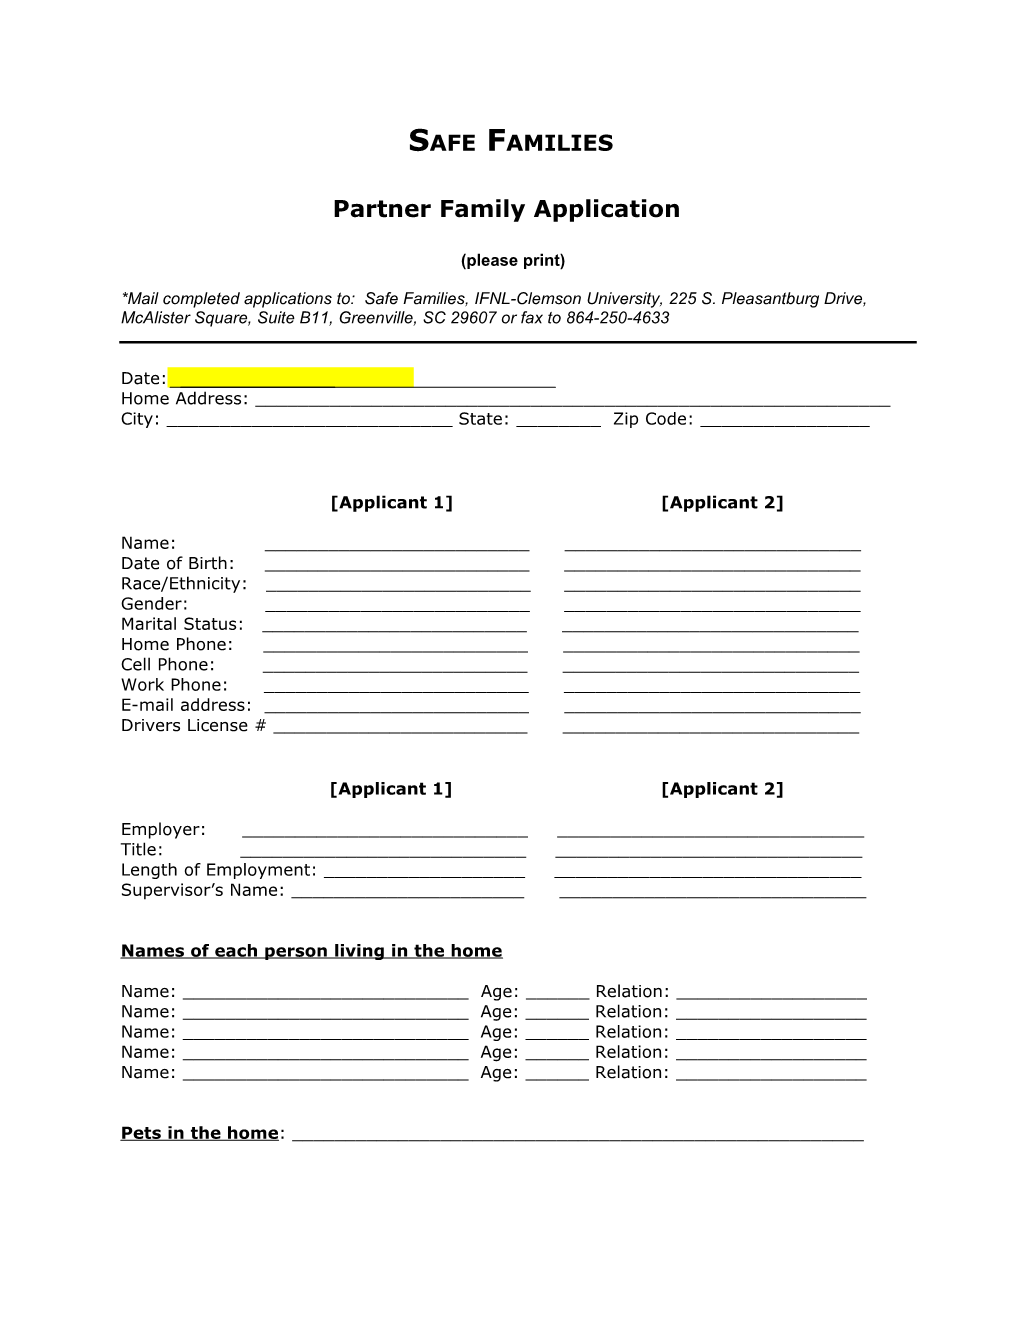 Partner Family Application